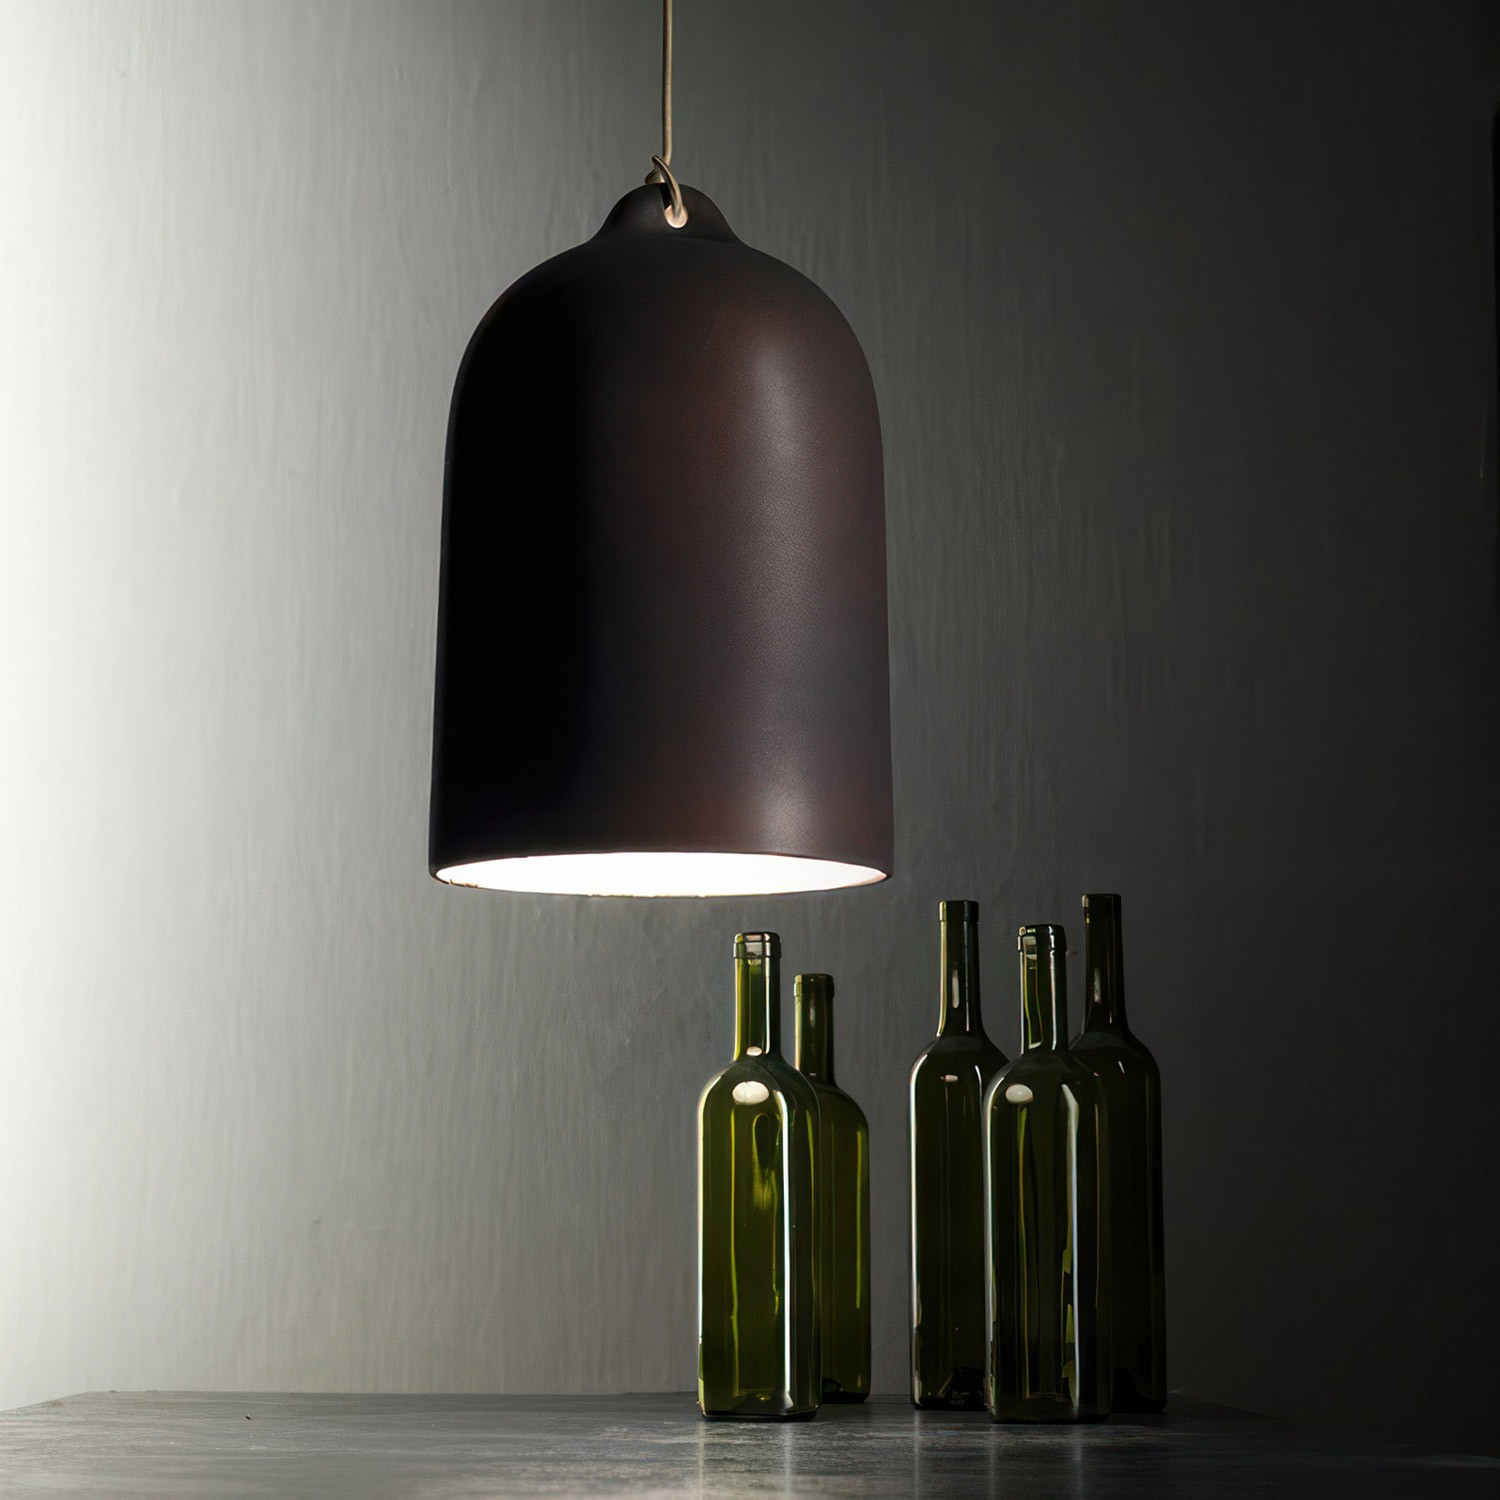 Glockenförmiger Lampenschirm XL aus Keramik zum Aufhängen - Made in Italy